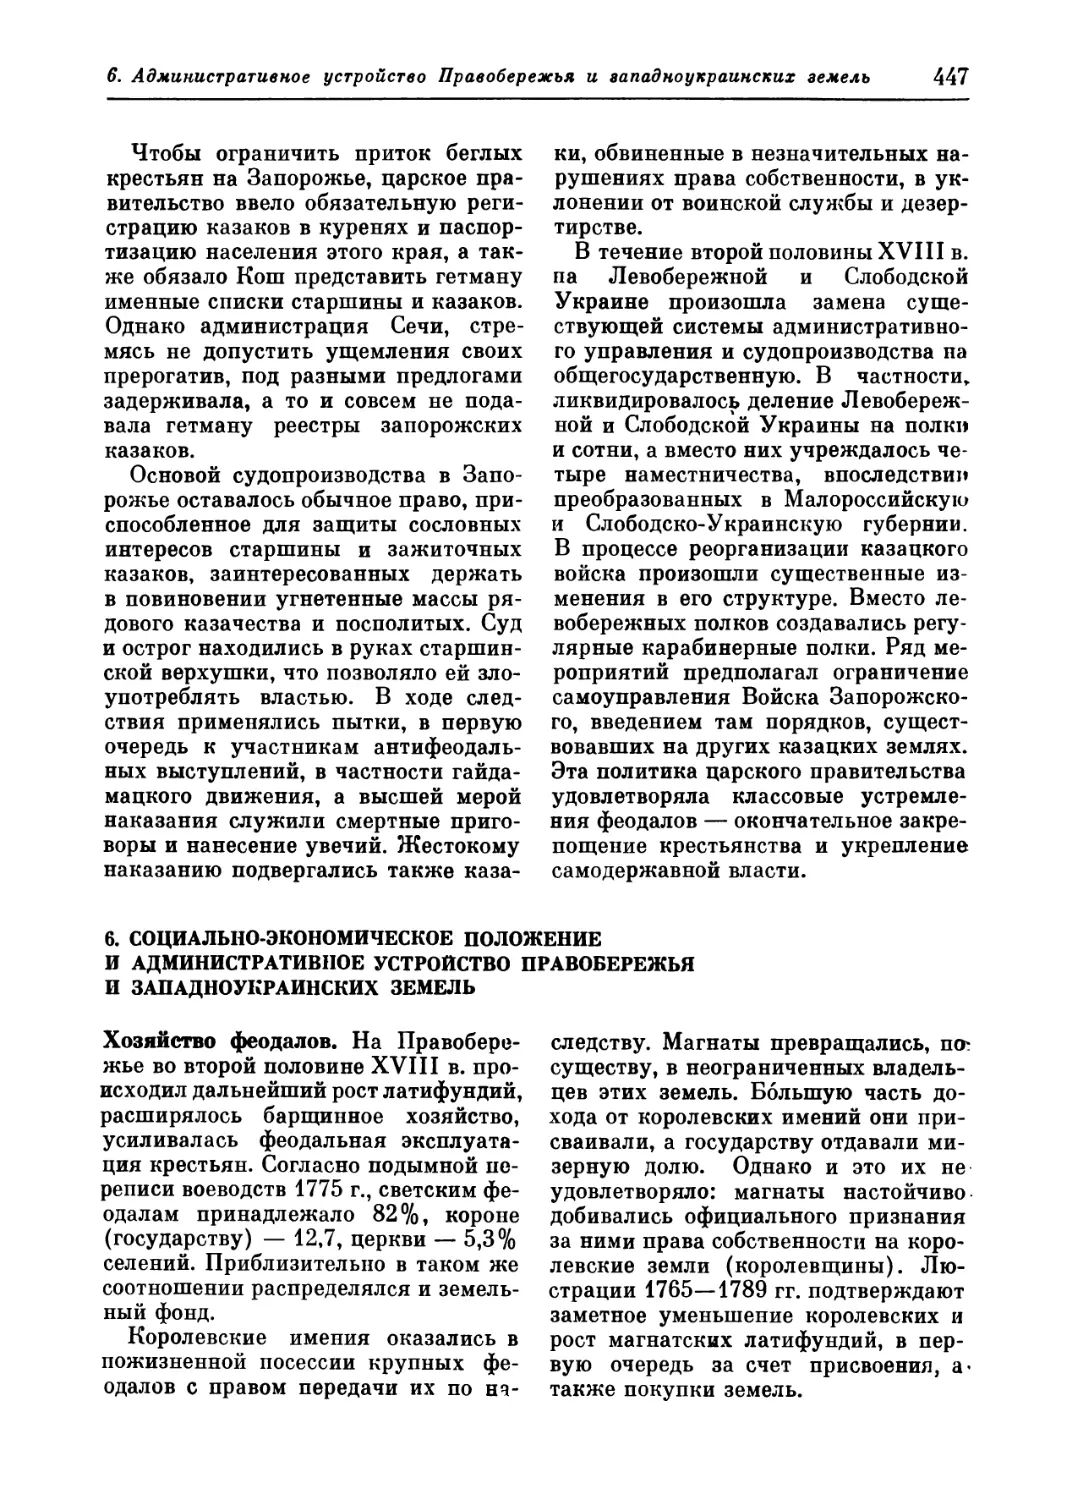 6. Социально-экономическое положение и административное устройство Правобережья и западноукраинских земель